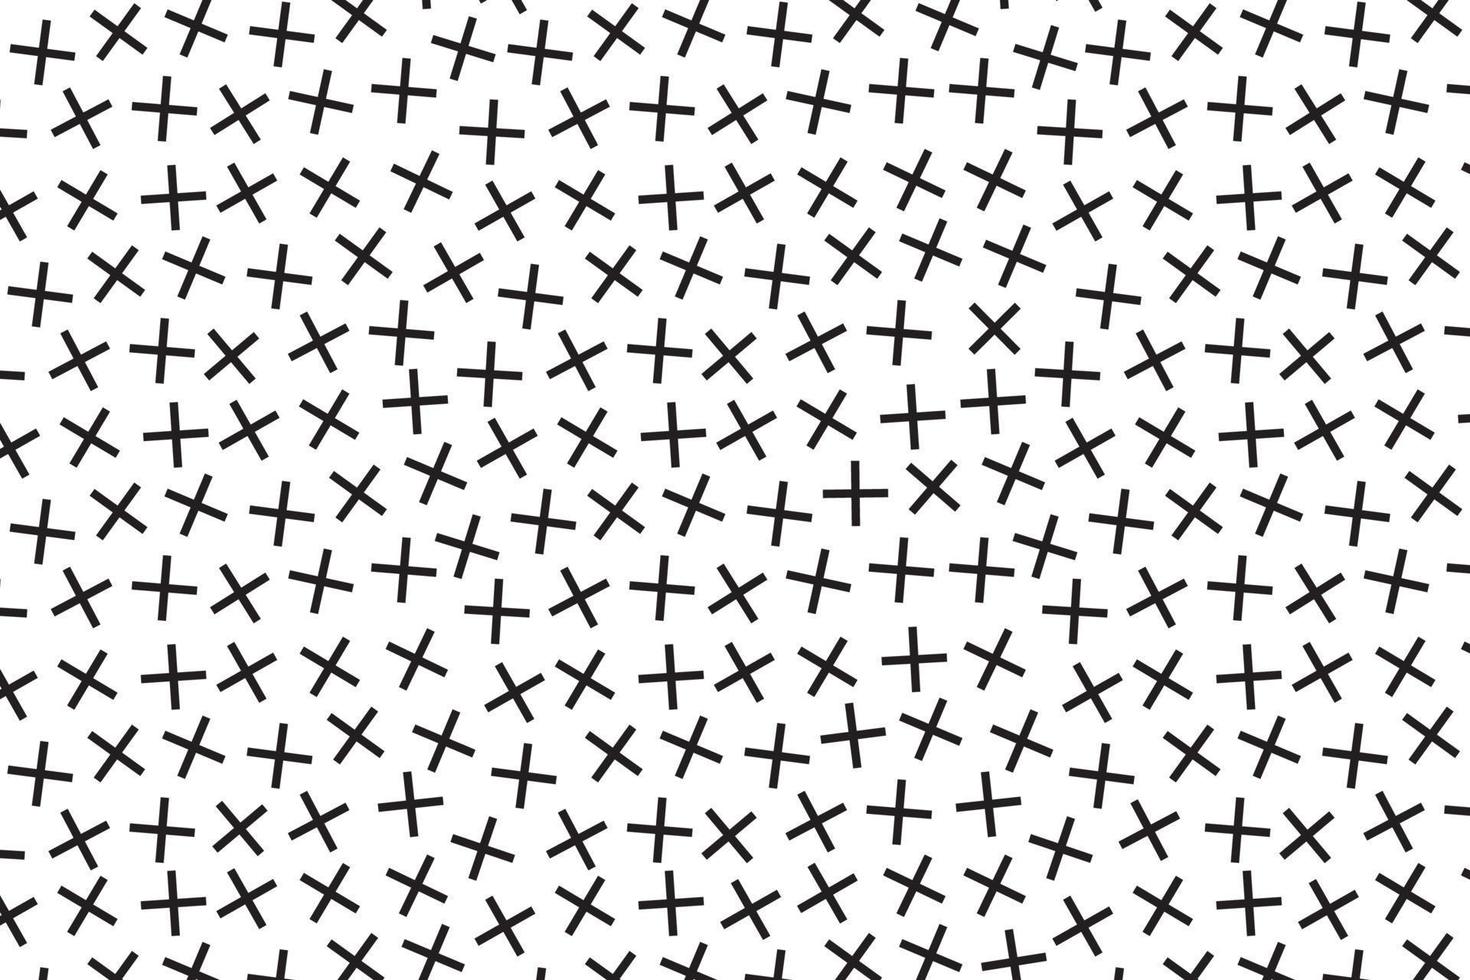 memphis abstract patroon op witte achtergrond. vector illustratie